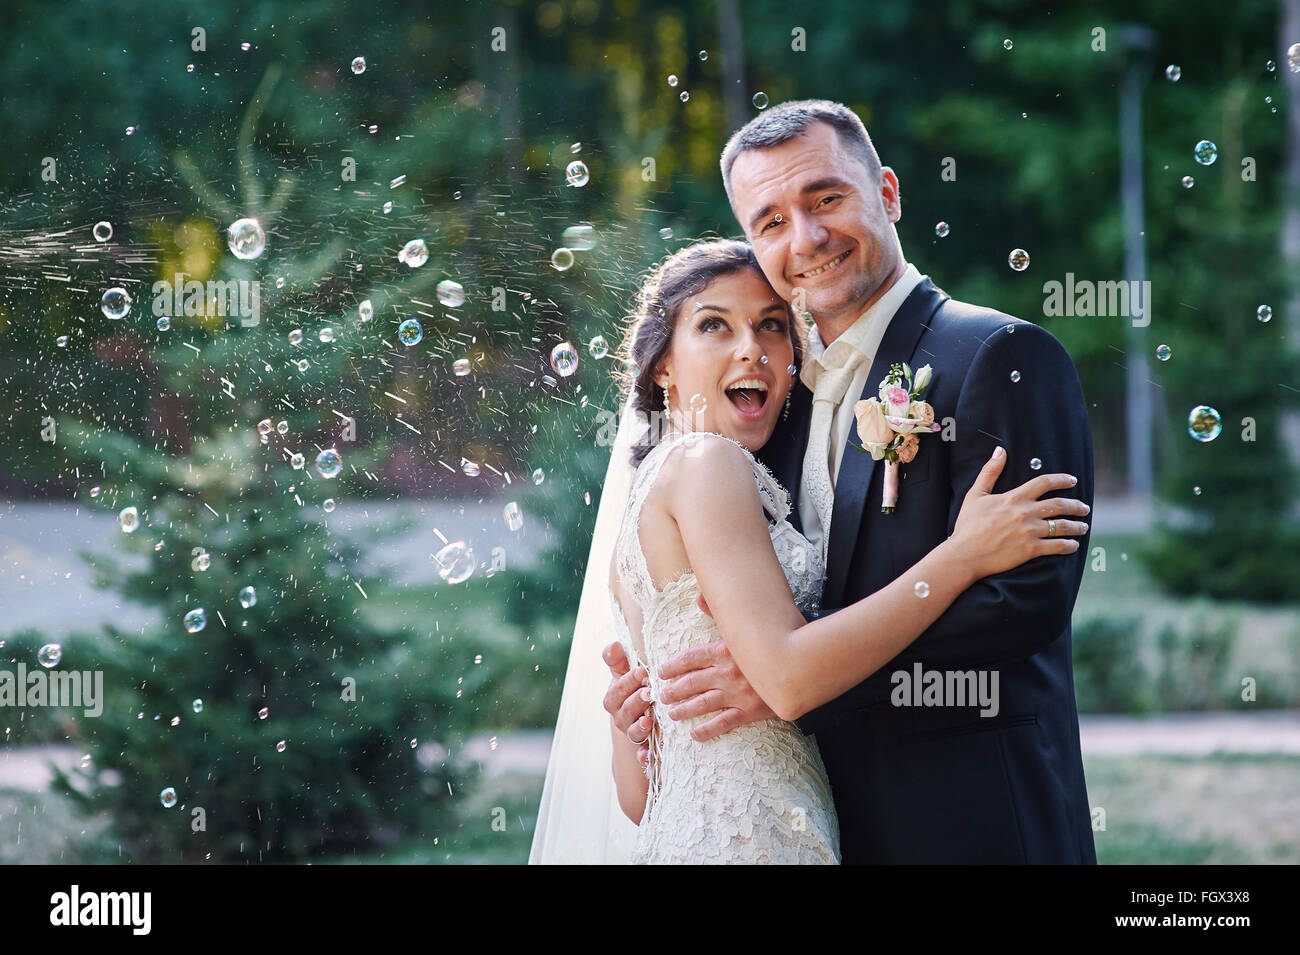 Heureux mariés et blowing bubbles in park Banque D'Images